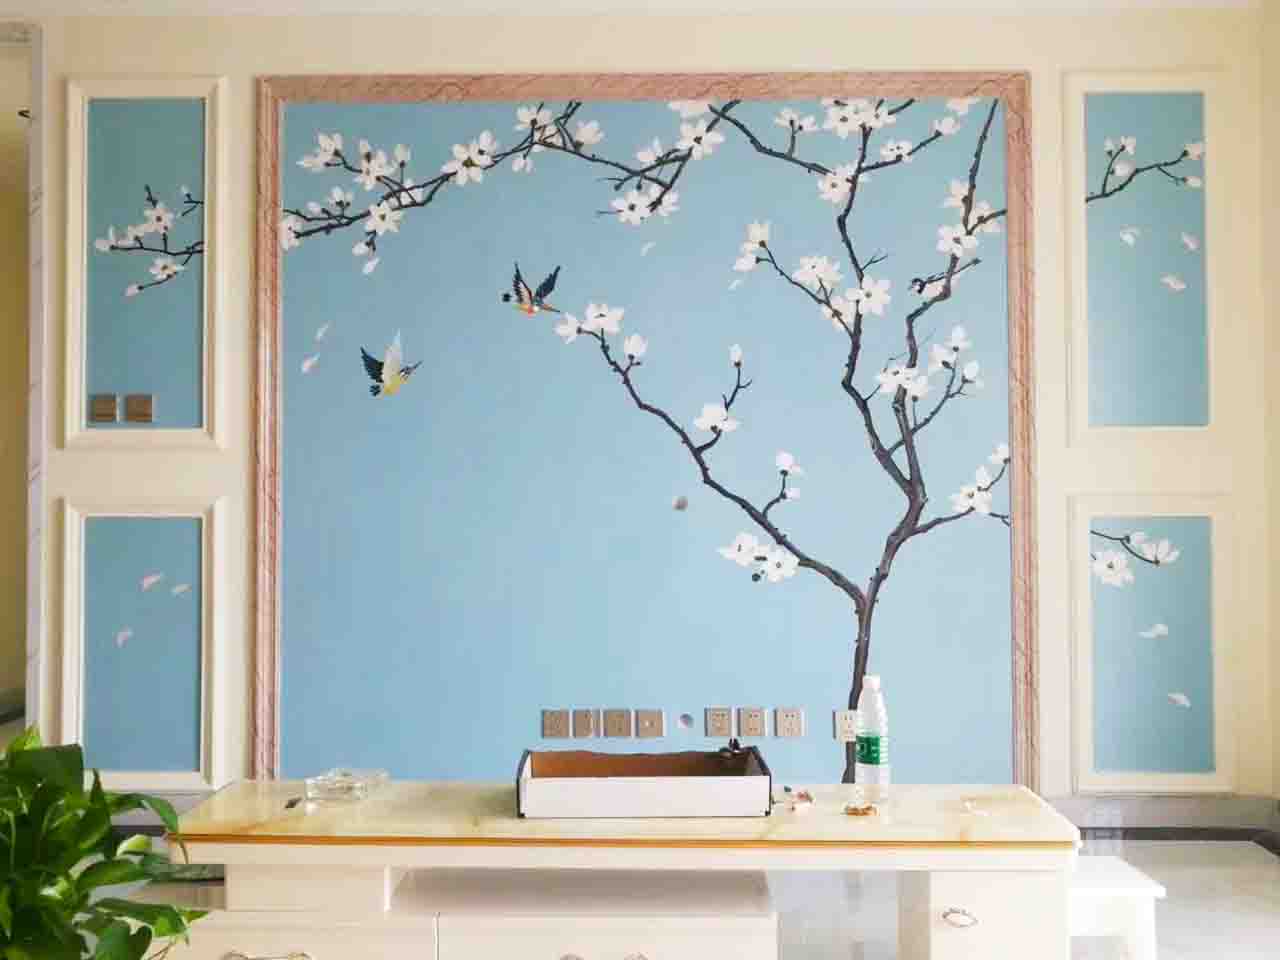 家装客厅背景墙花鸟工笔画壁画彩绘涂鸦手绘示意图